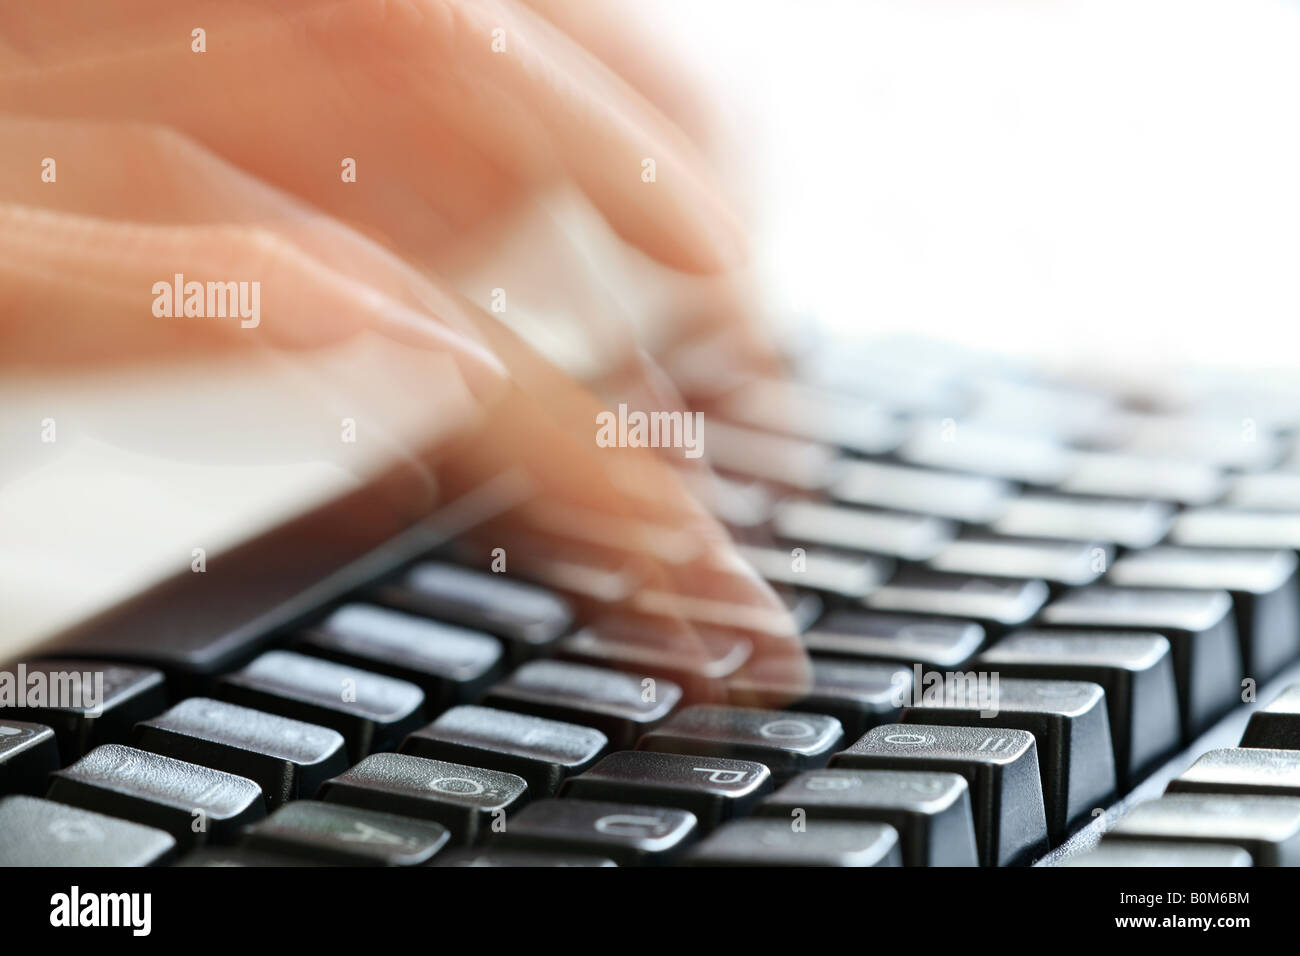 Schreiben auf einer Tastatur eines PCs Stockfotografie - Alamy